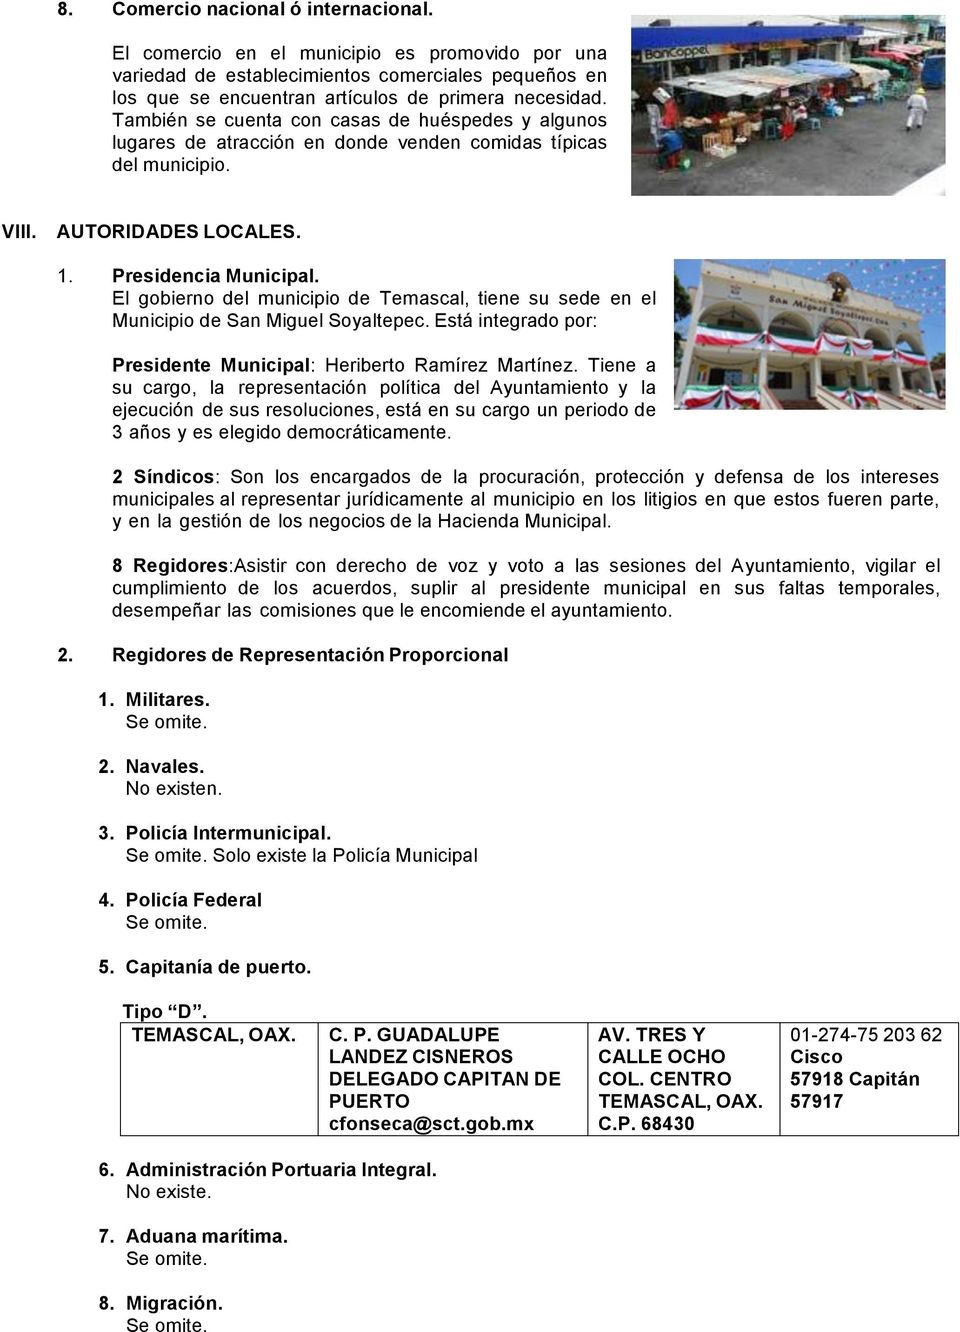 El gobierno del municipio de Temascal, tiene su sede en el Municipio de San Miguel Soyaltepec. Está integrado por: Presidente Municipal: Heriberto Ramírez Martínez.